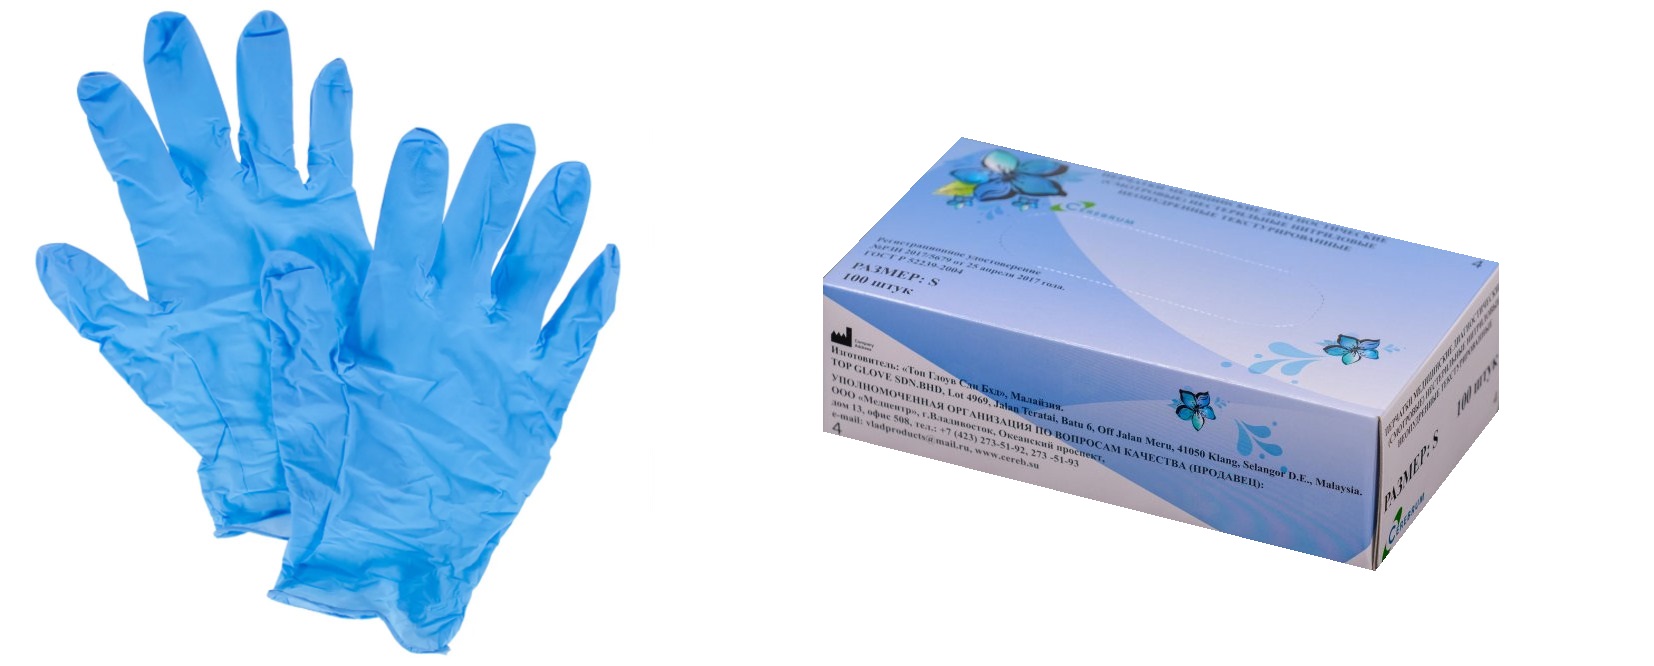 Перчатки медицинские диагностические (смотровые) нестерильные нитриловые неопудренные / с полимерным покрытием текстурированные. Размер M. Голубого цвета.